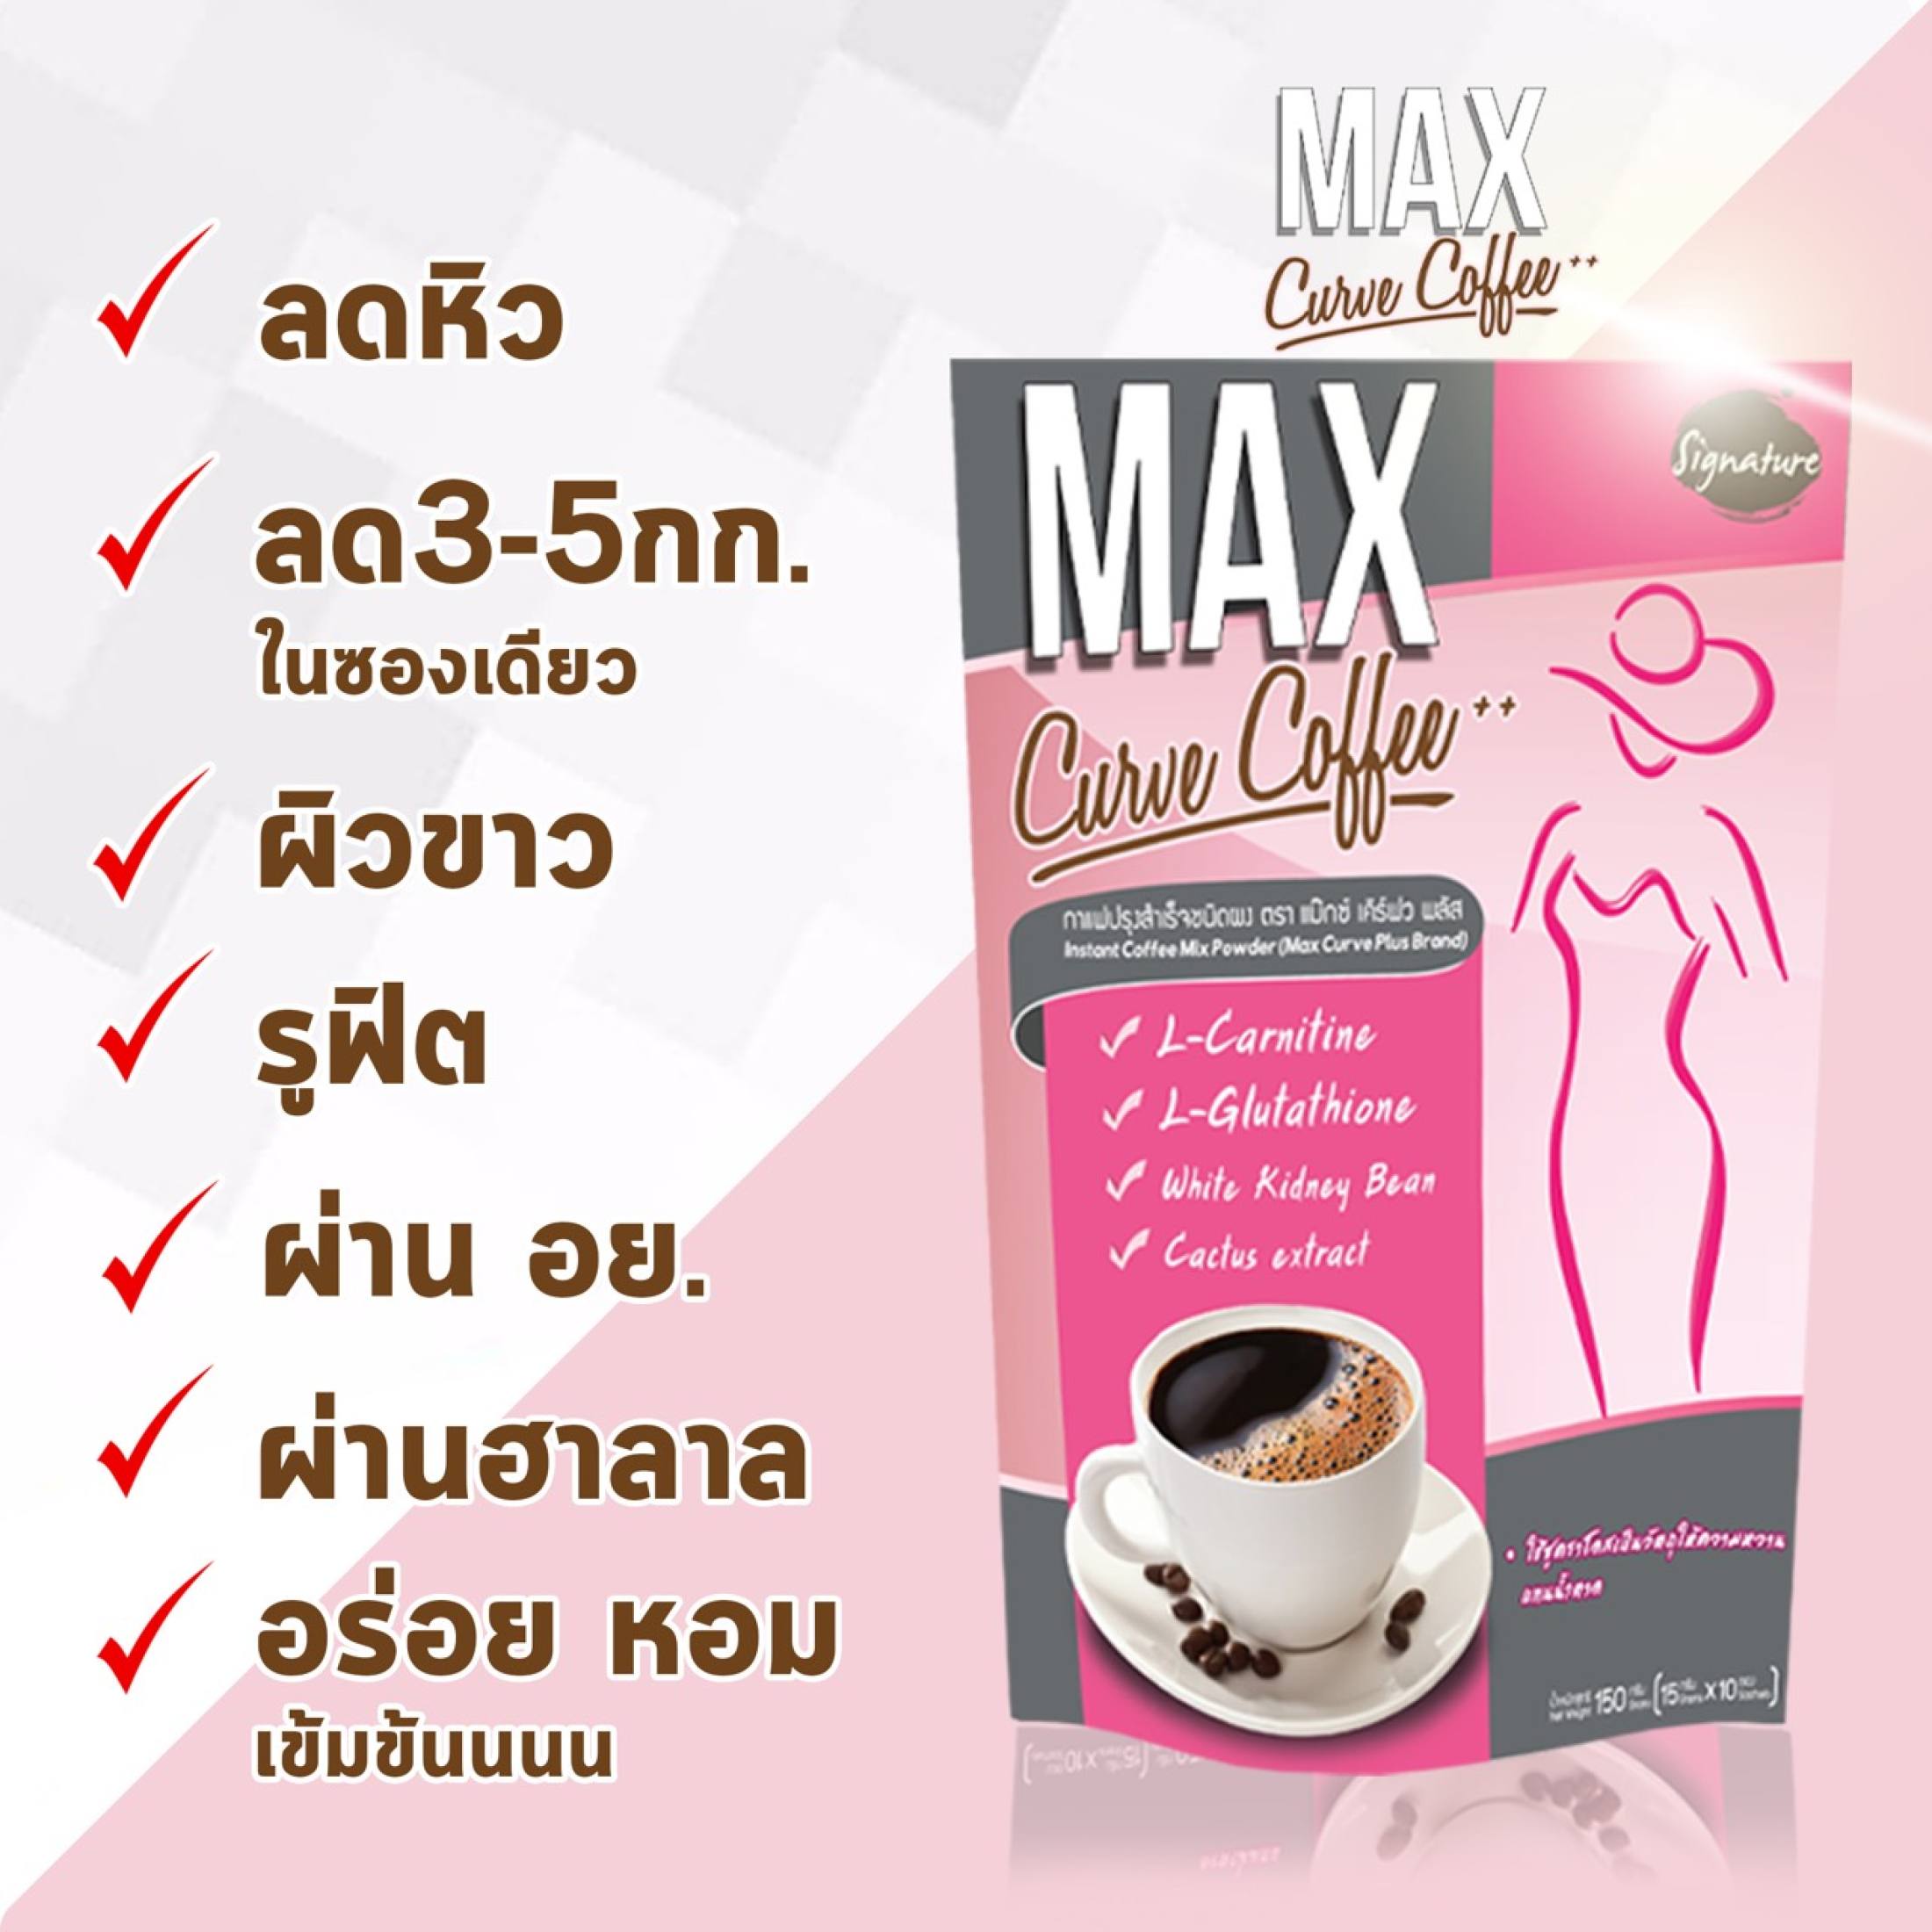 (1ห่อ) Max Curve Coffee Sugar free กาแฟ แม็กซ์เคิร์ฟ